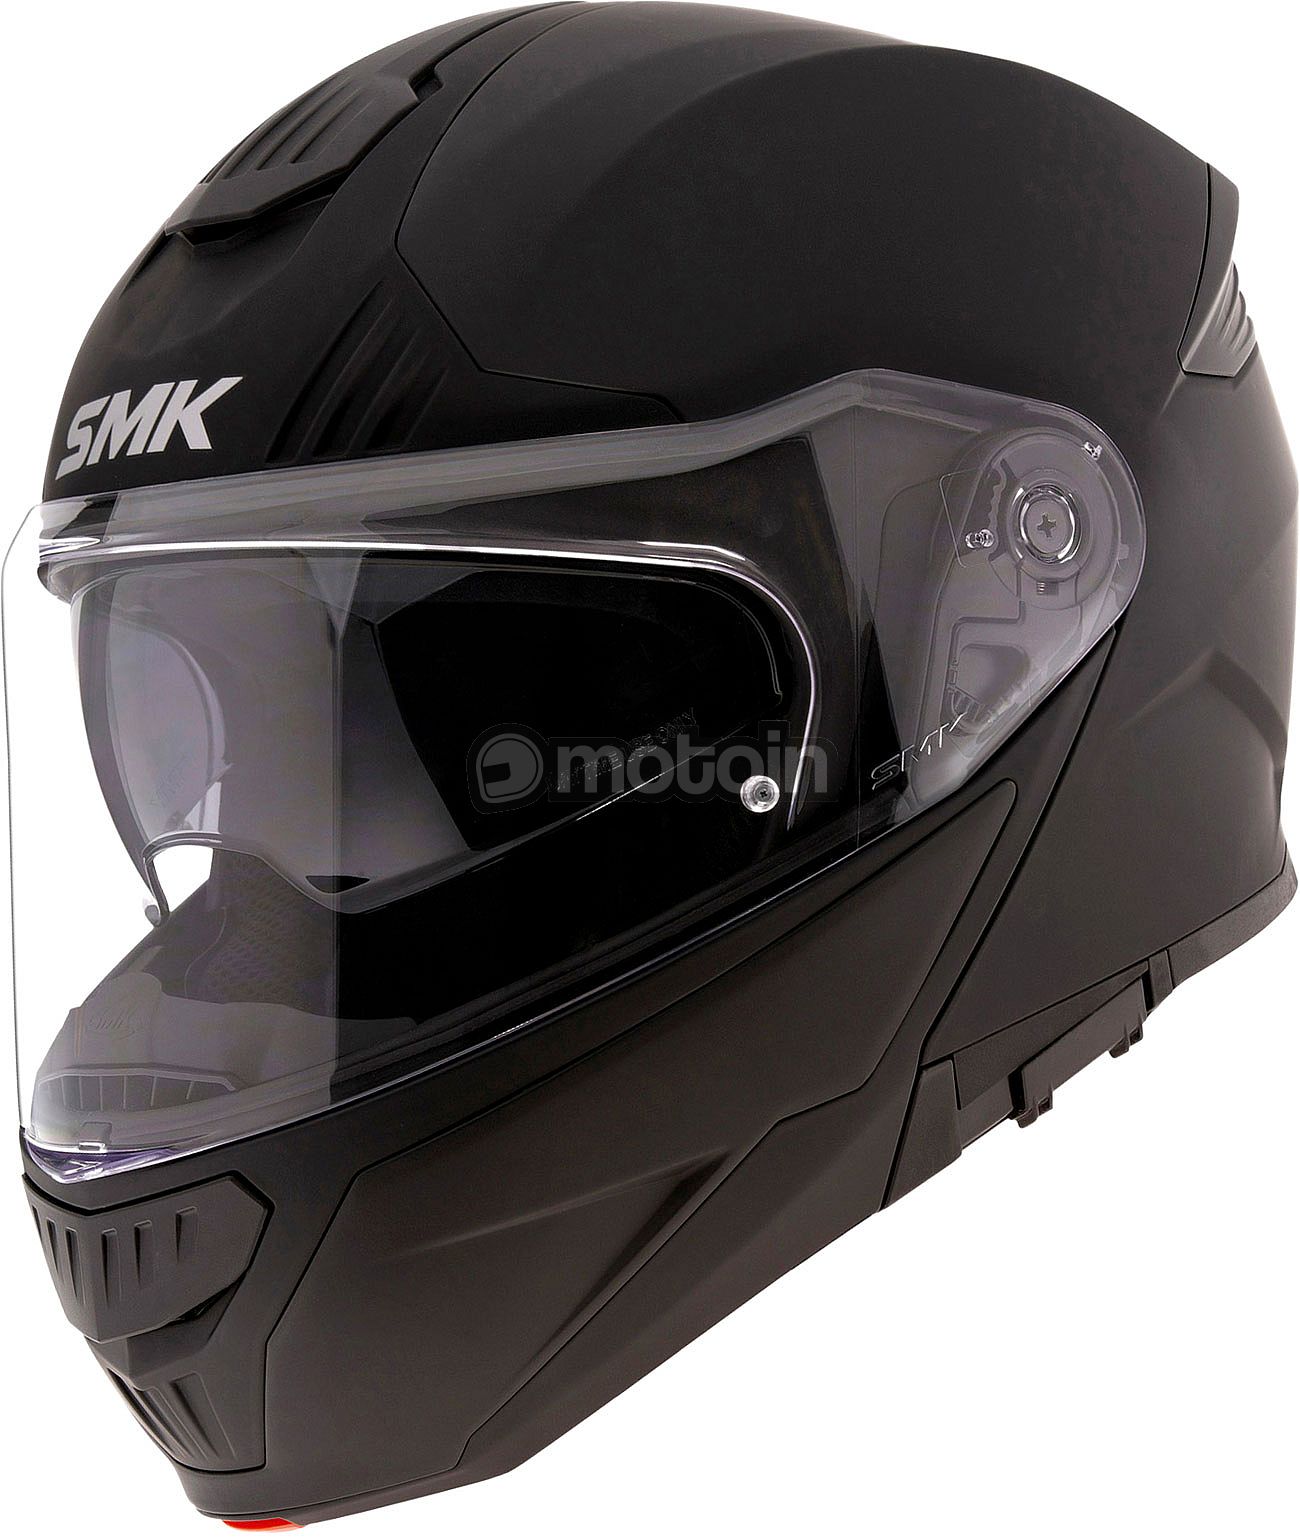 SMK Gullwing, capacete de protecção